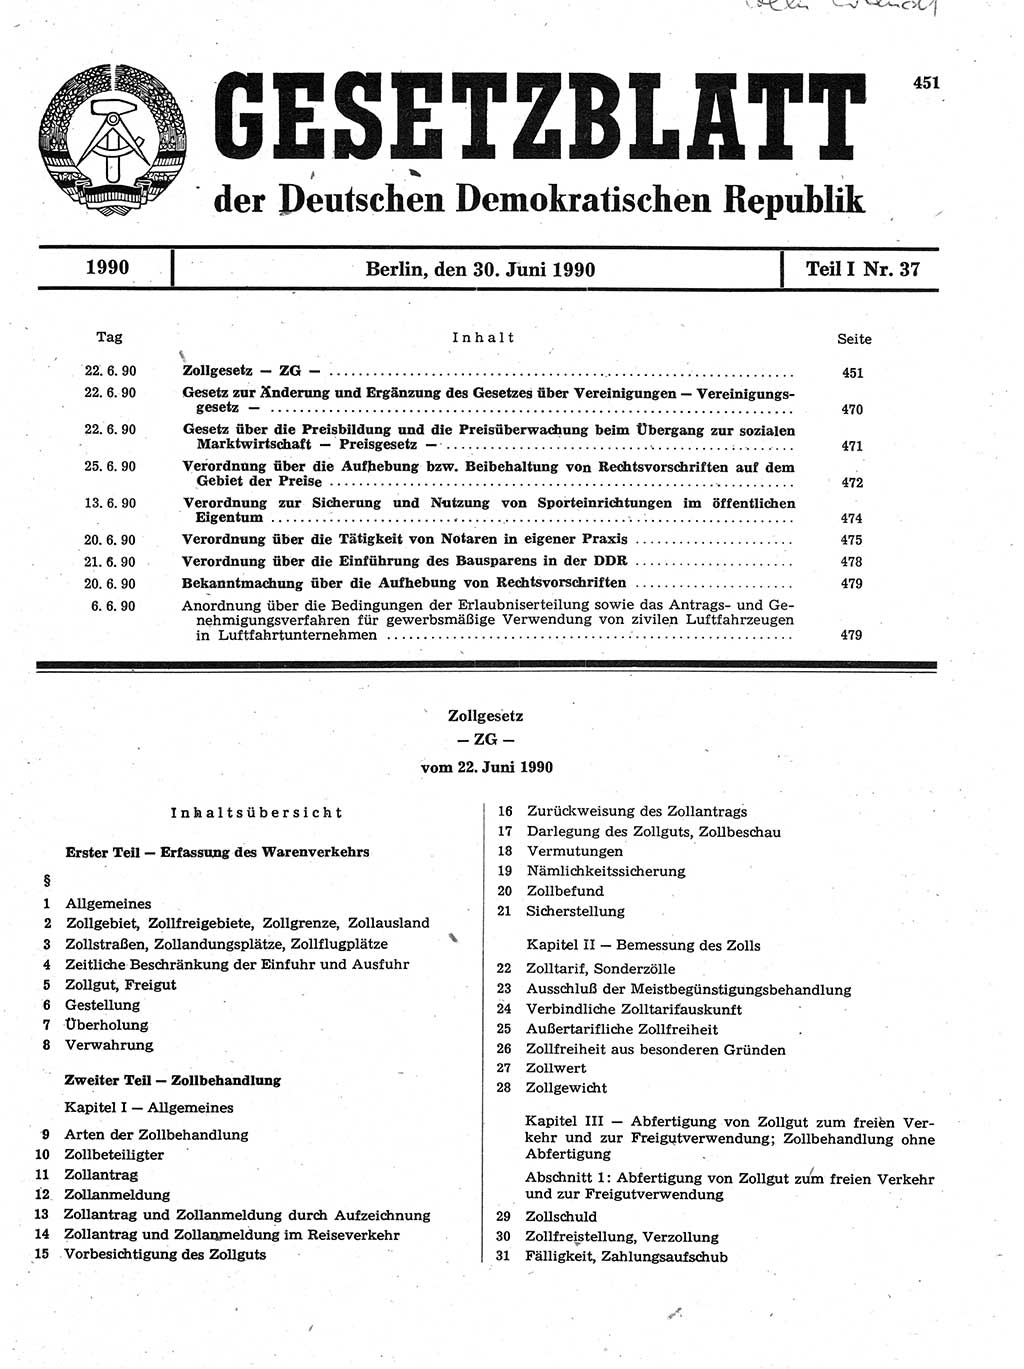 Gesetzblatt (GBl.) der Deutschen Demokratischen Republik (DDR) Teil Ⅰ 1990, Seite 451 (GBl. DDR Ⅰ 1990, S. 451)